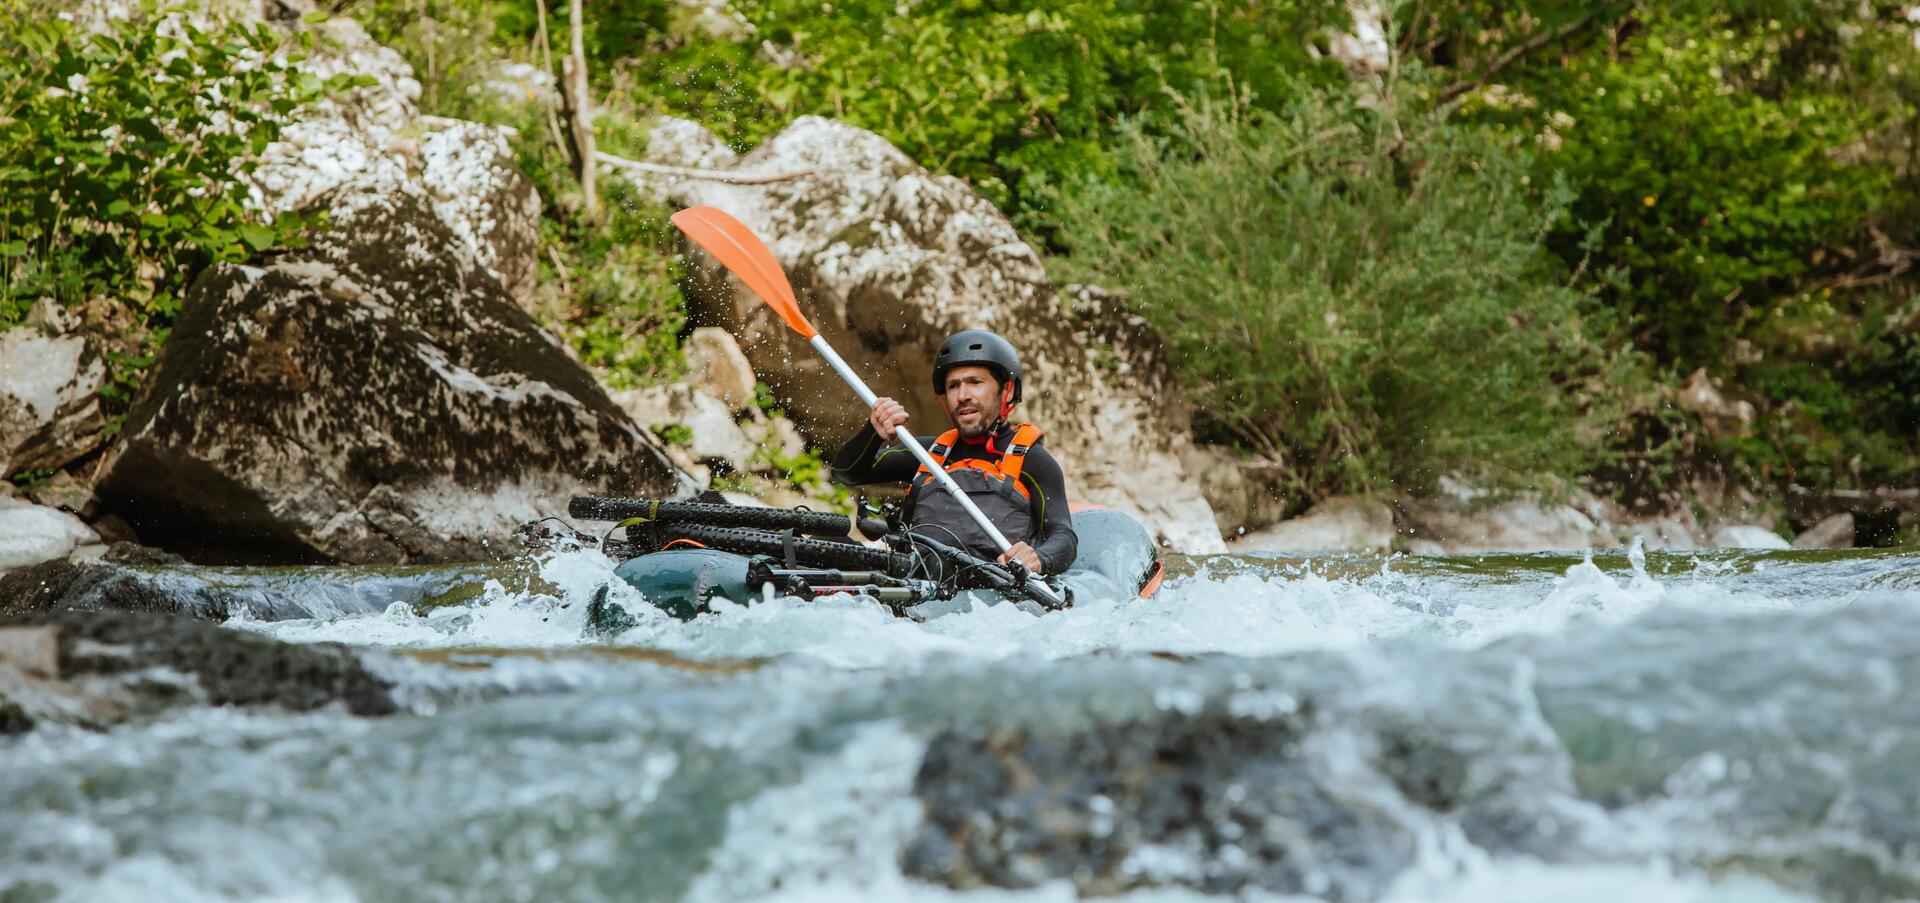 Les 5 meilleurs spots pour faire du kayak en Belgique 